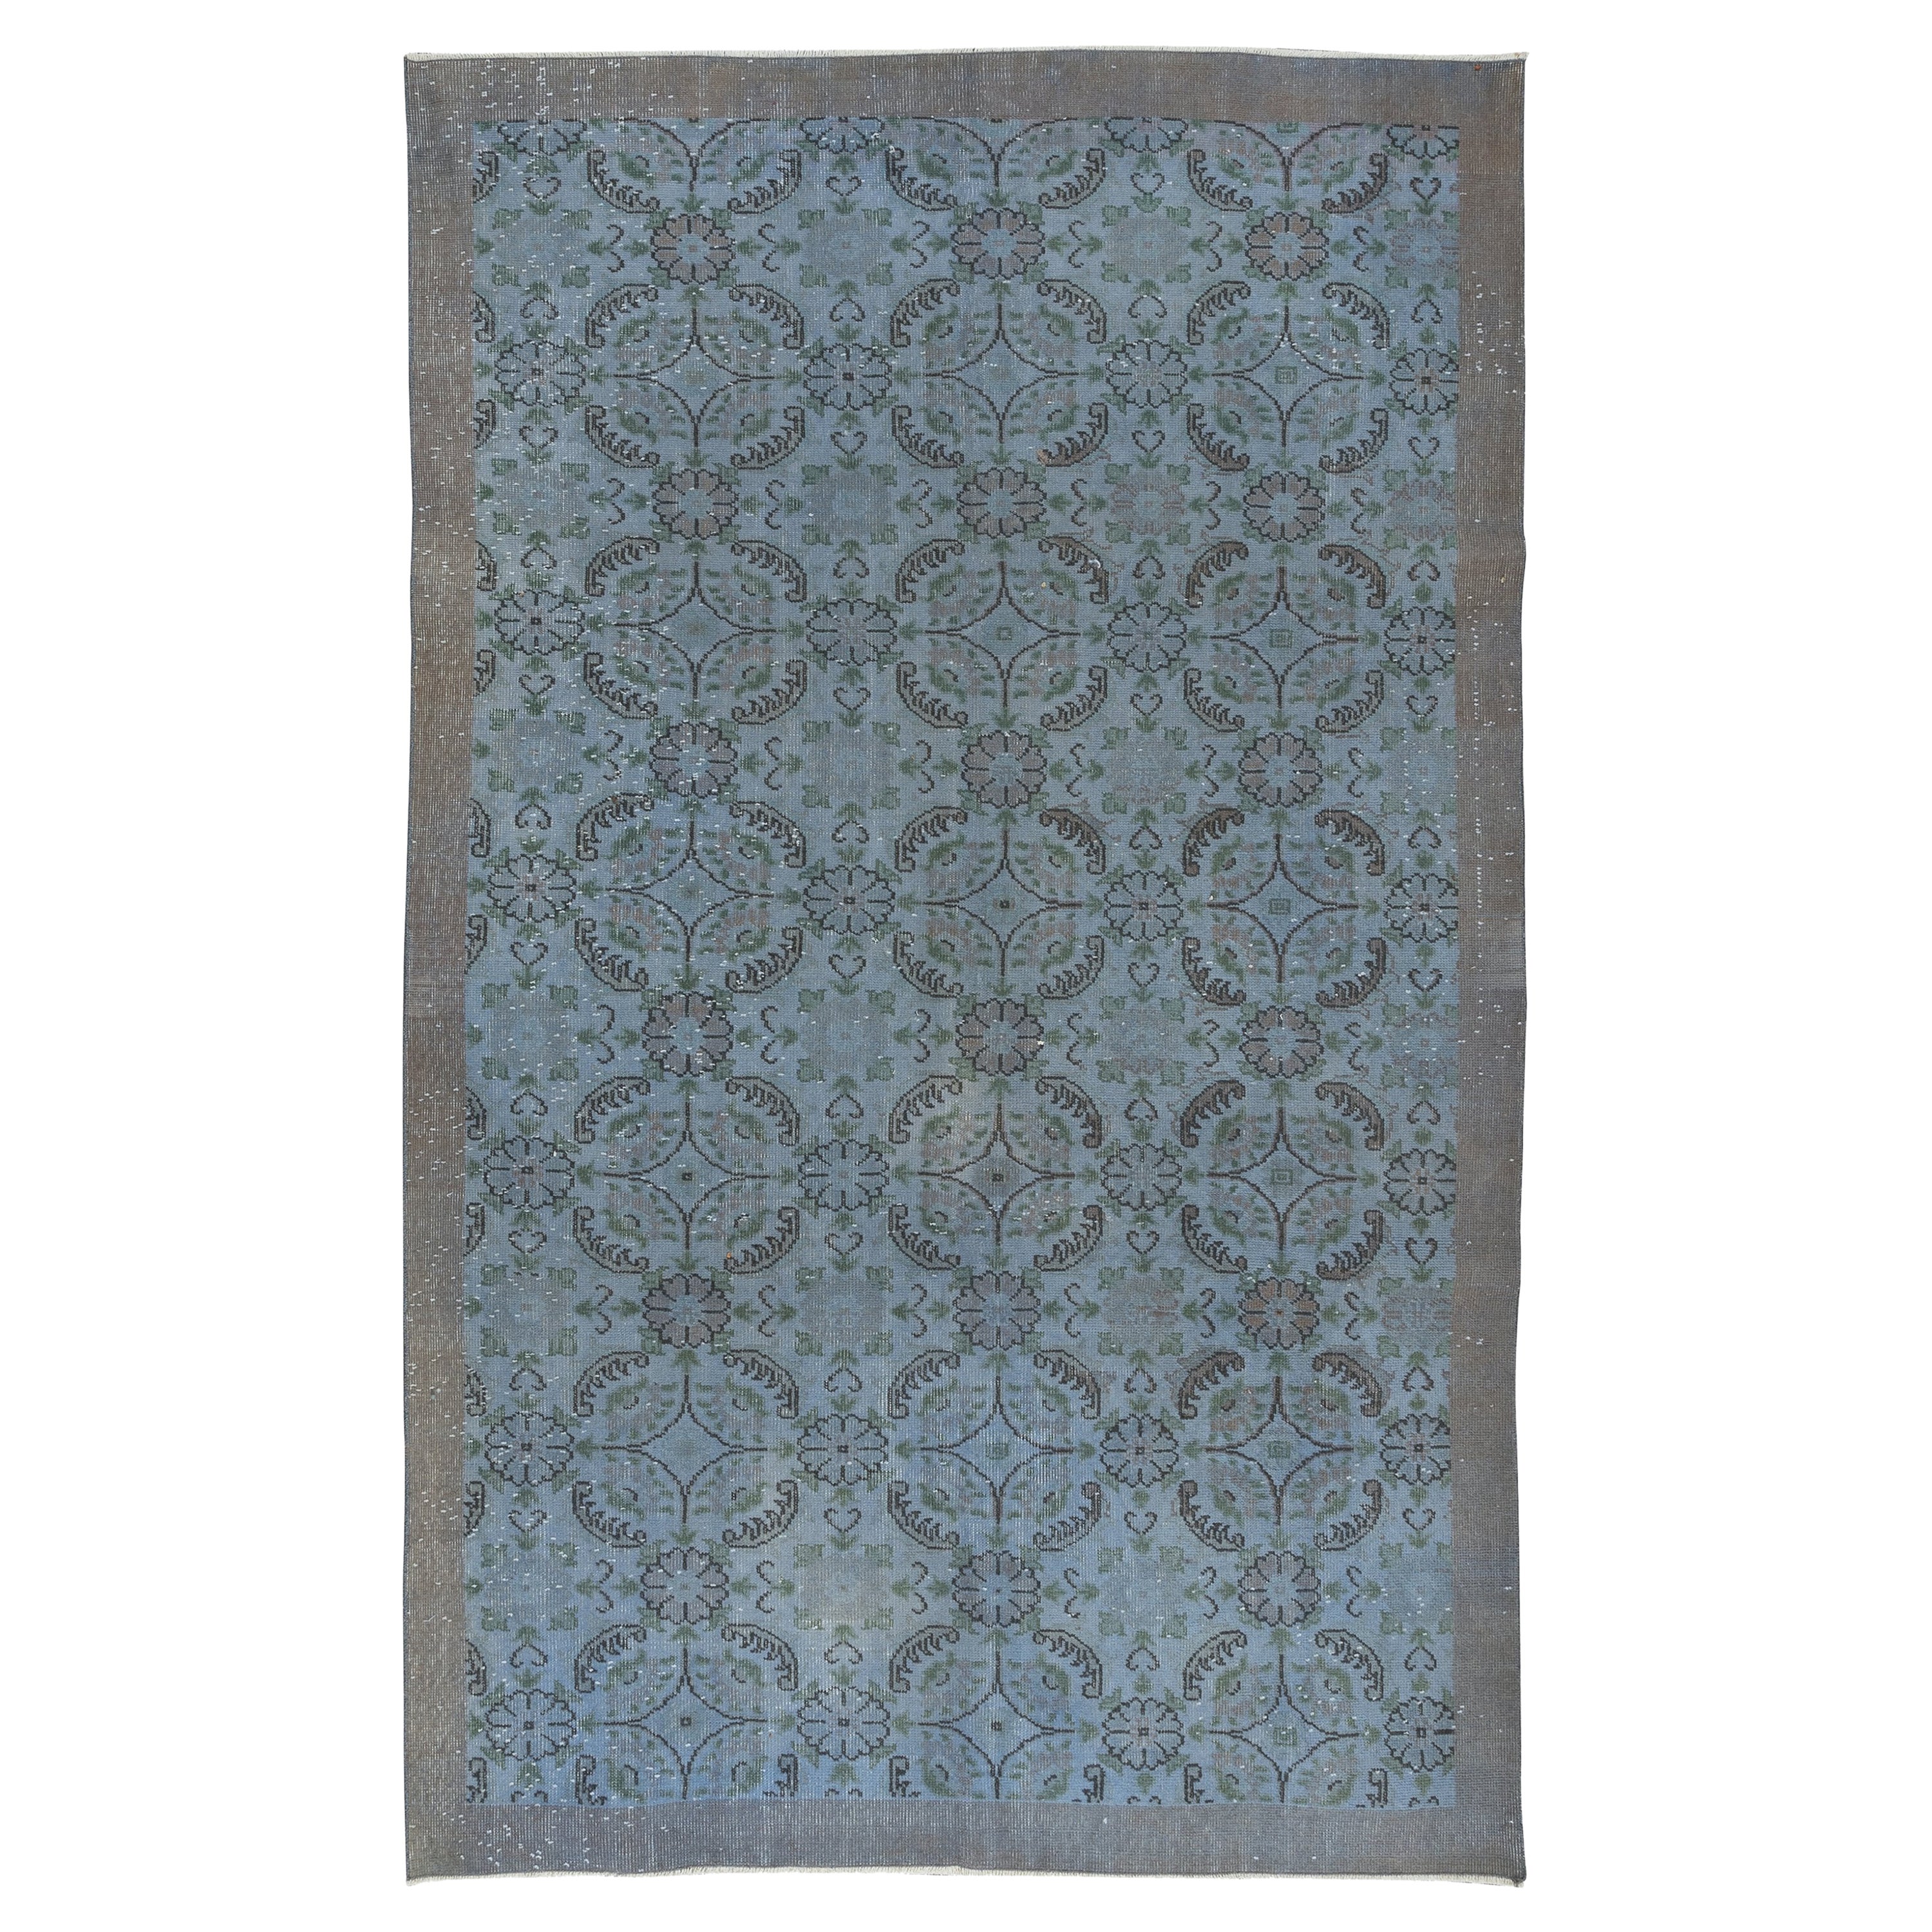 6x9,3 Ft handgefertigter, geblümter türkischer Teppich mit massiver Bordüre und hellblauem Hintergrund